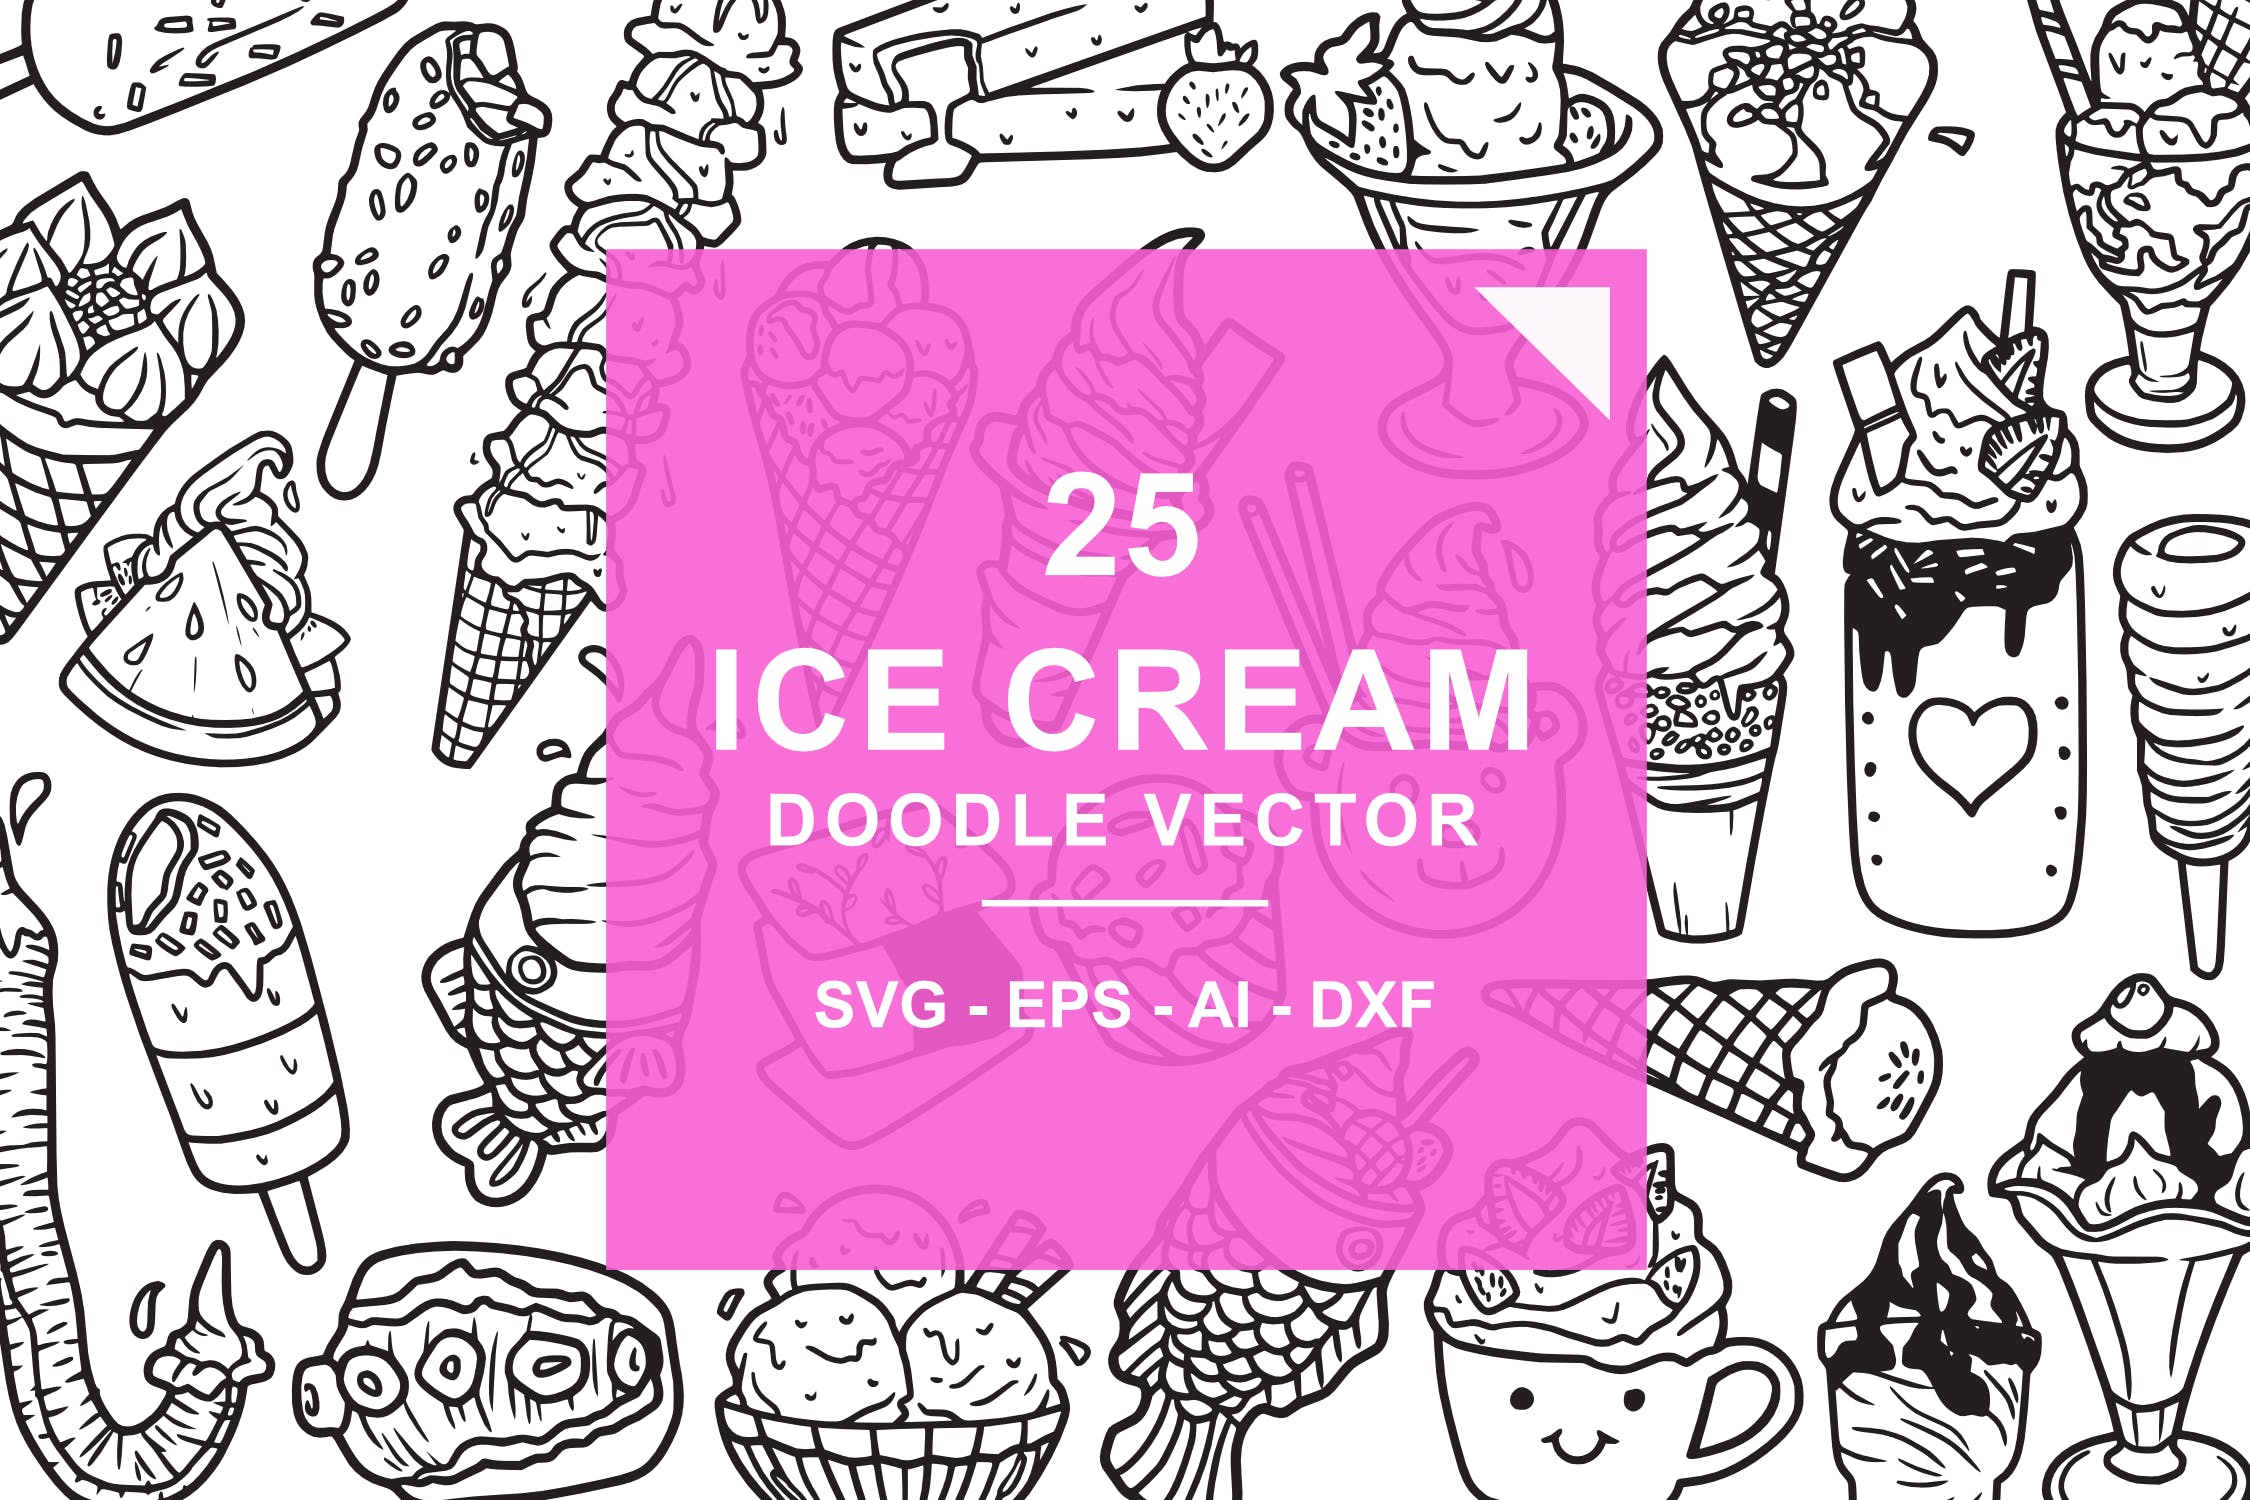 25款冰淇淋涂鸦手绘图案设计素材 Ice Cream Doodle Vector插图